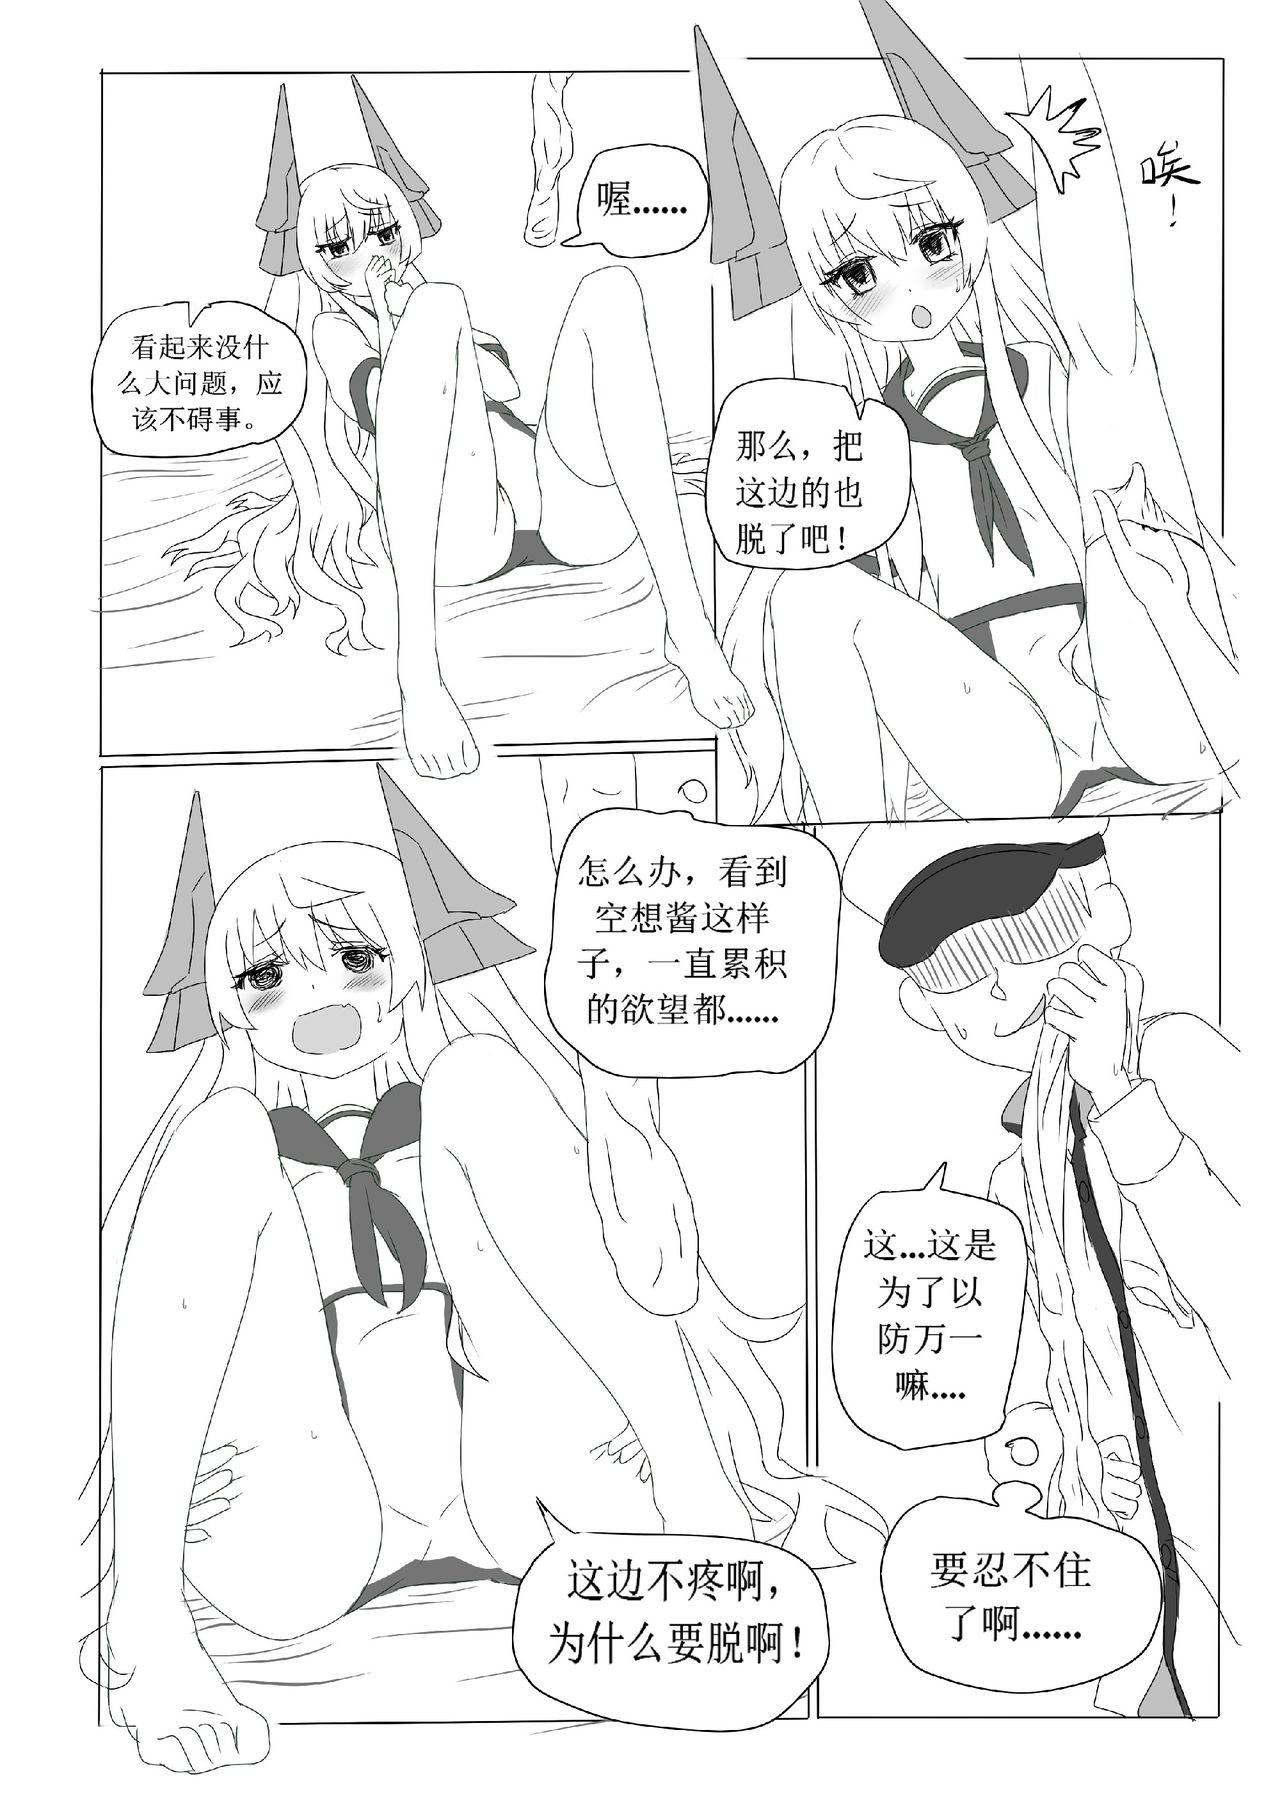 Foot Worship 一本正经的空想H本子 - Warship girls Tgirls - Page 7